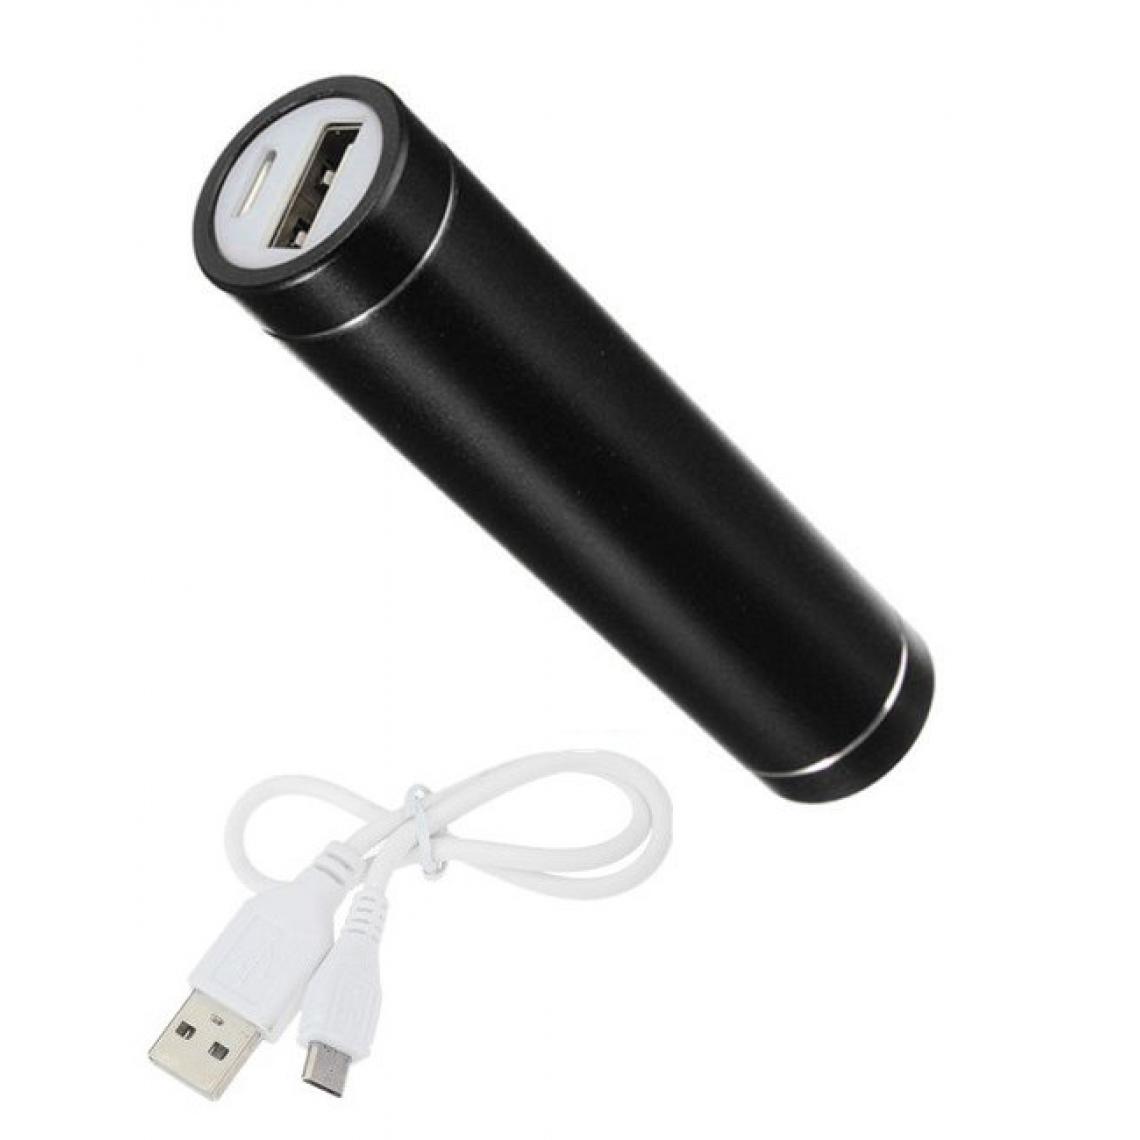 Shot - Batterie Chargeur Externe pour "SAMSUNG Galaxy A20" Power Bank 2600mAh avec Cable USB/Mirco USB Secours Telephone (NOIR) - Chargeur secteur téléphone